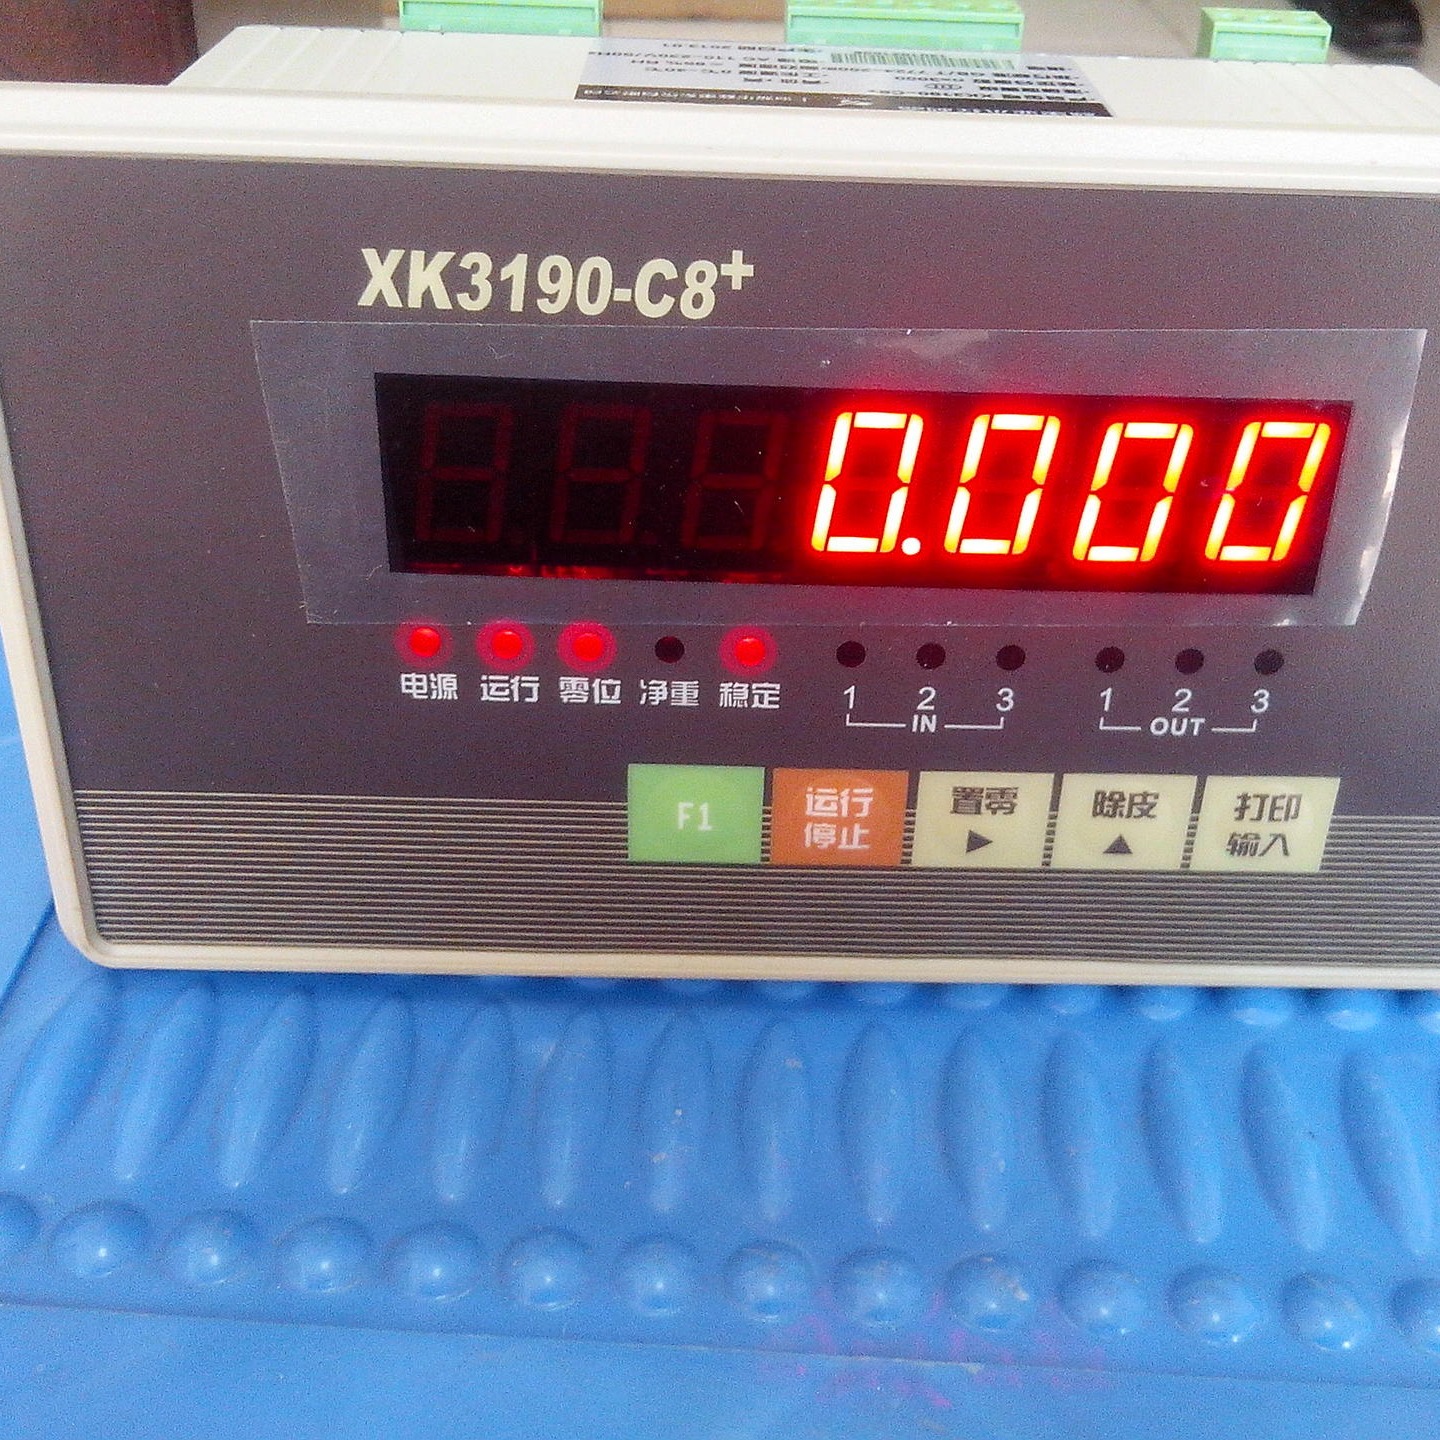 上海耀华XK3190-C8+电子秤带模拟量输出4-20ma 100公斤带继电器信号输出电子秤